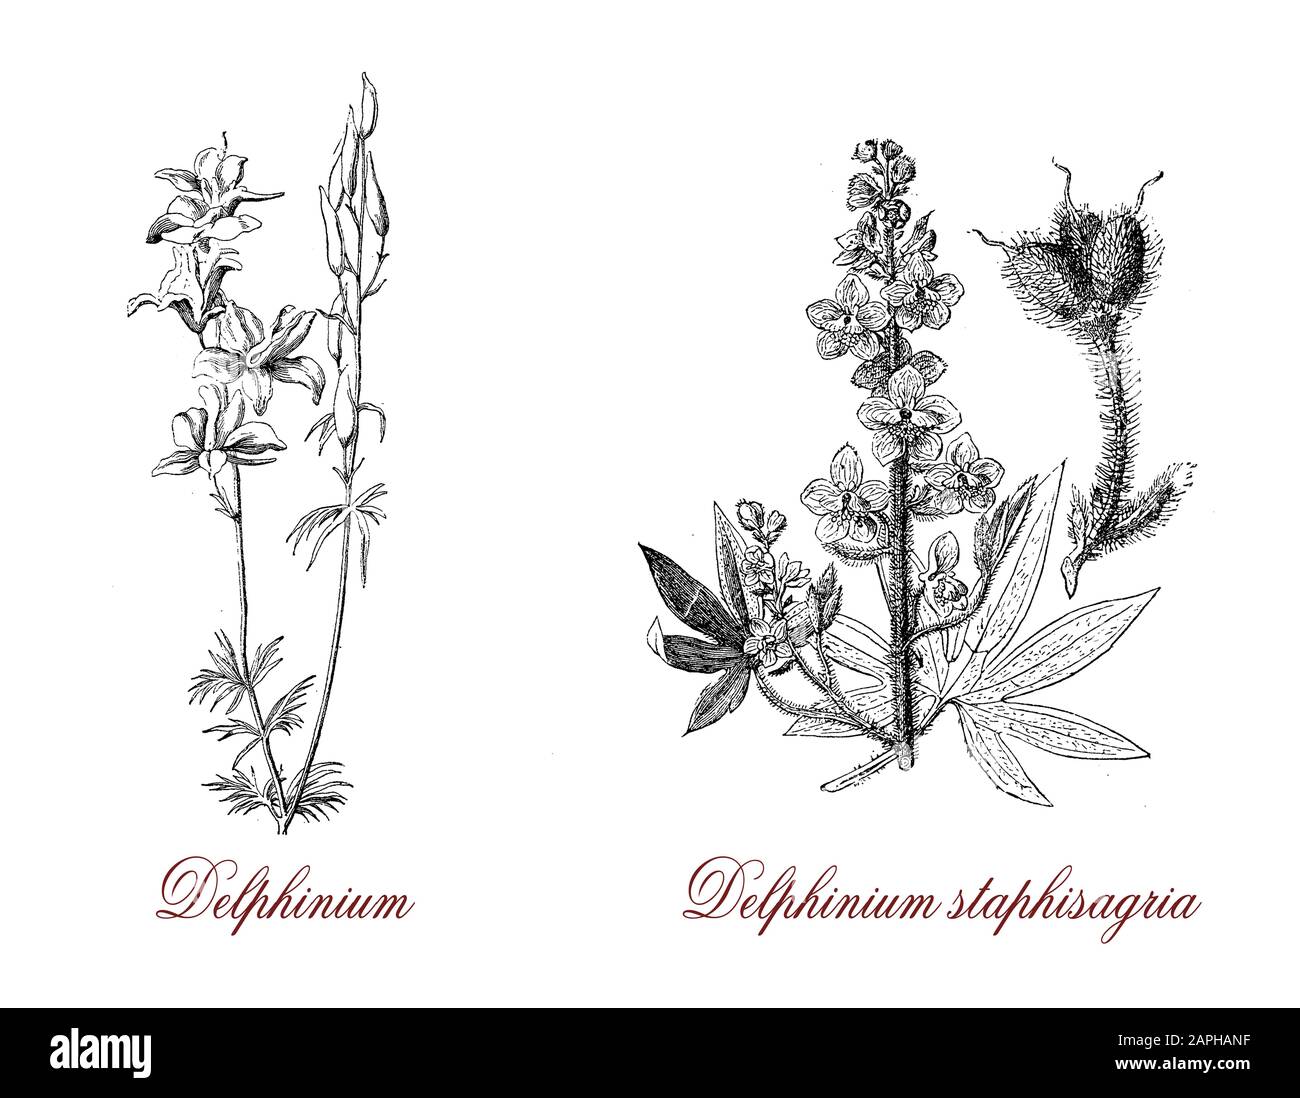 Delphinium staphisagria ou larkspur est une espèce de Delphinium, les fleurs sont bleu mauve, la plante très toxique, utilisée comme émétique et vermifuge Banque D'Images